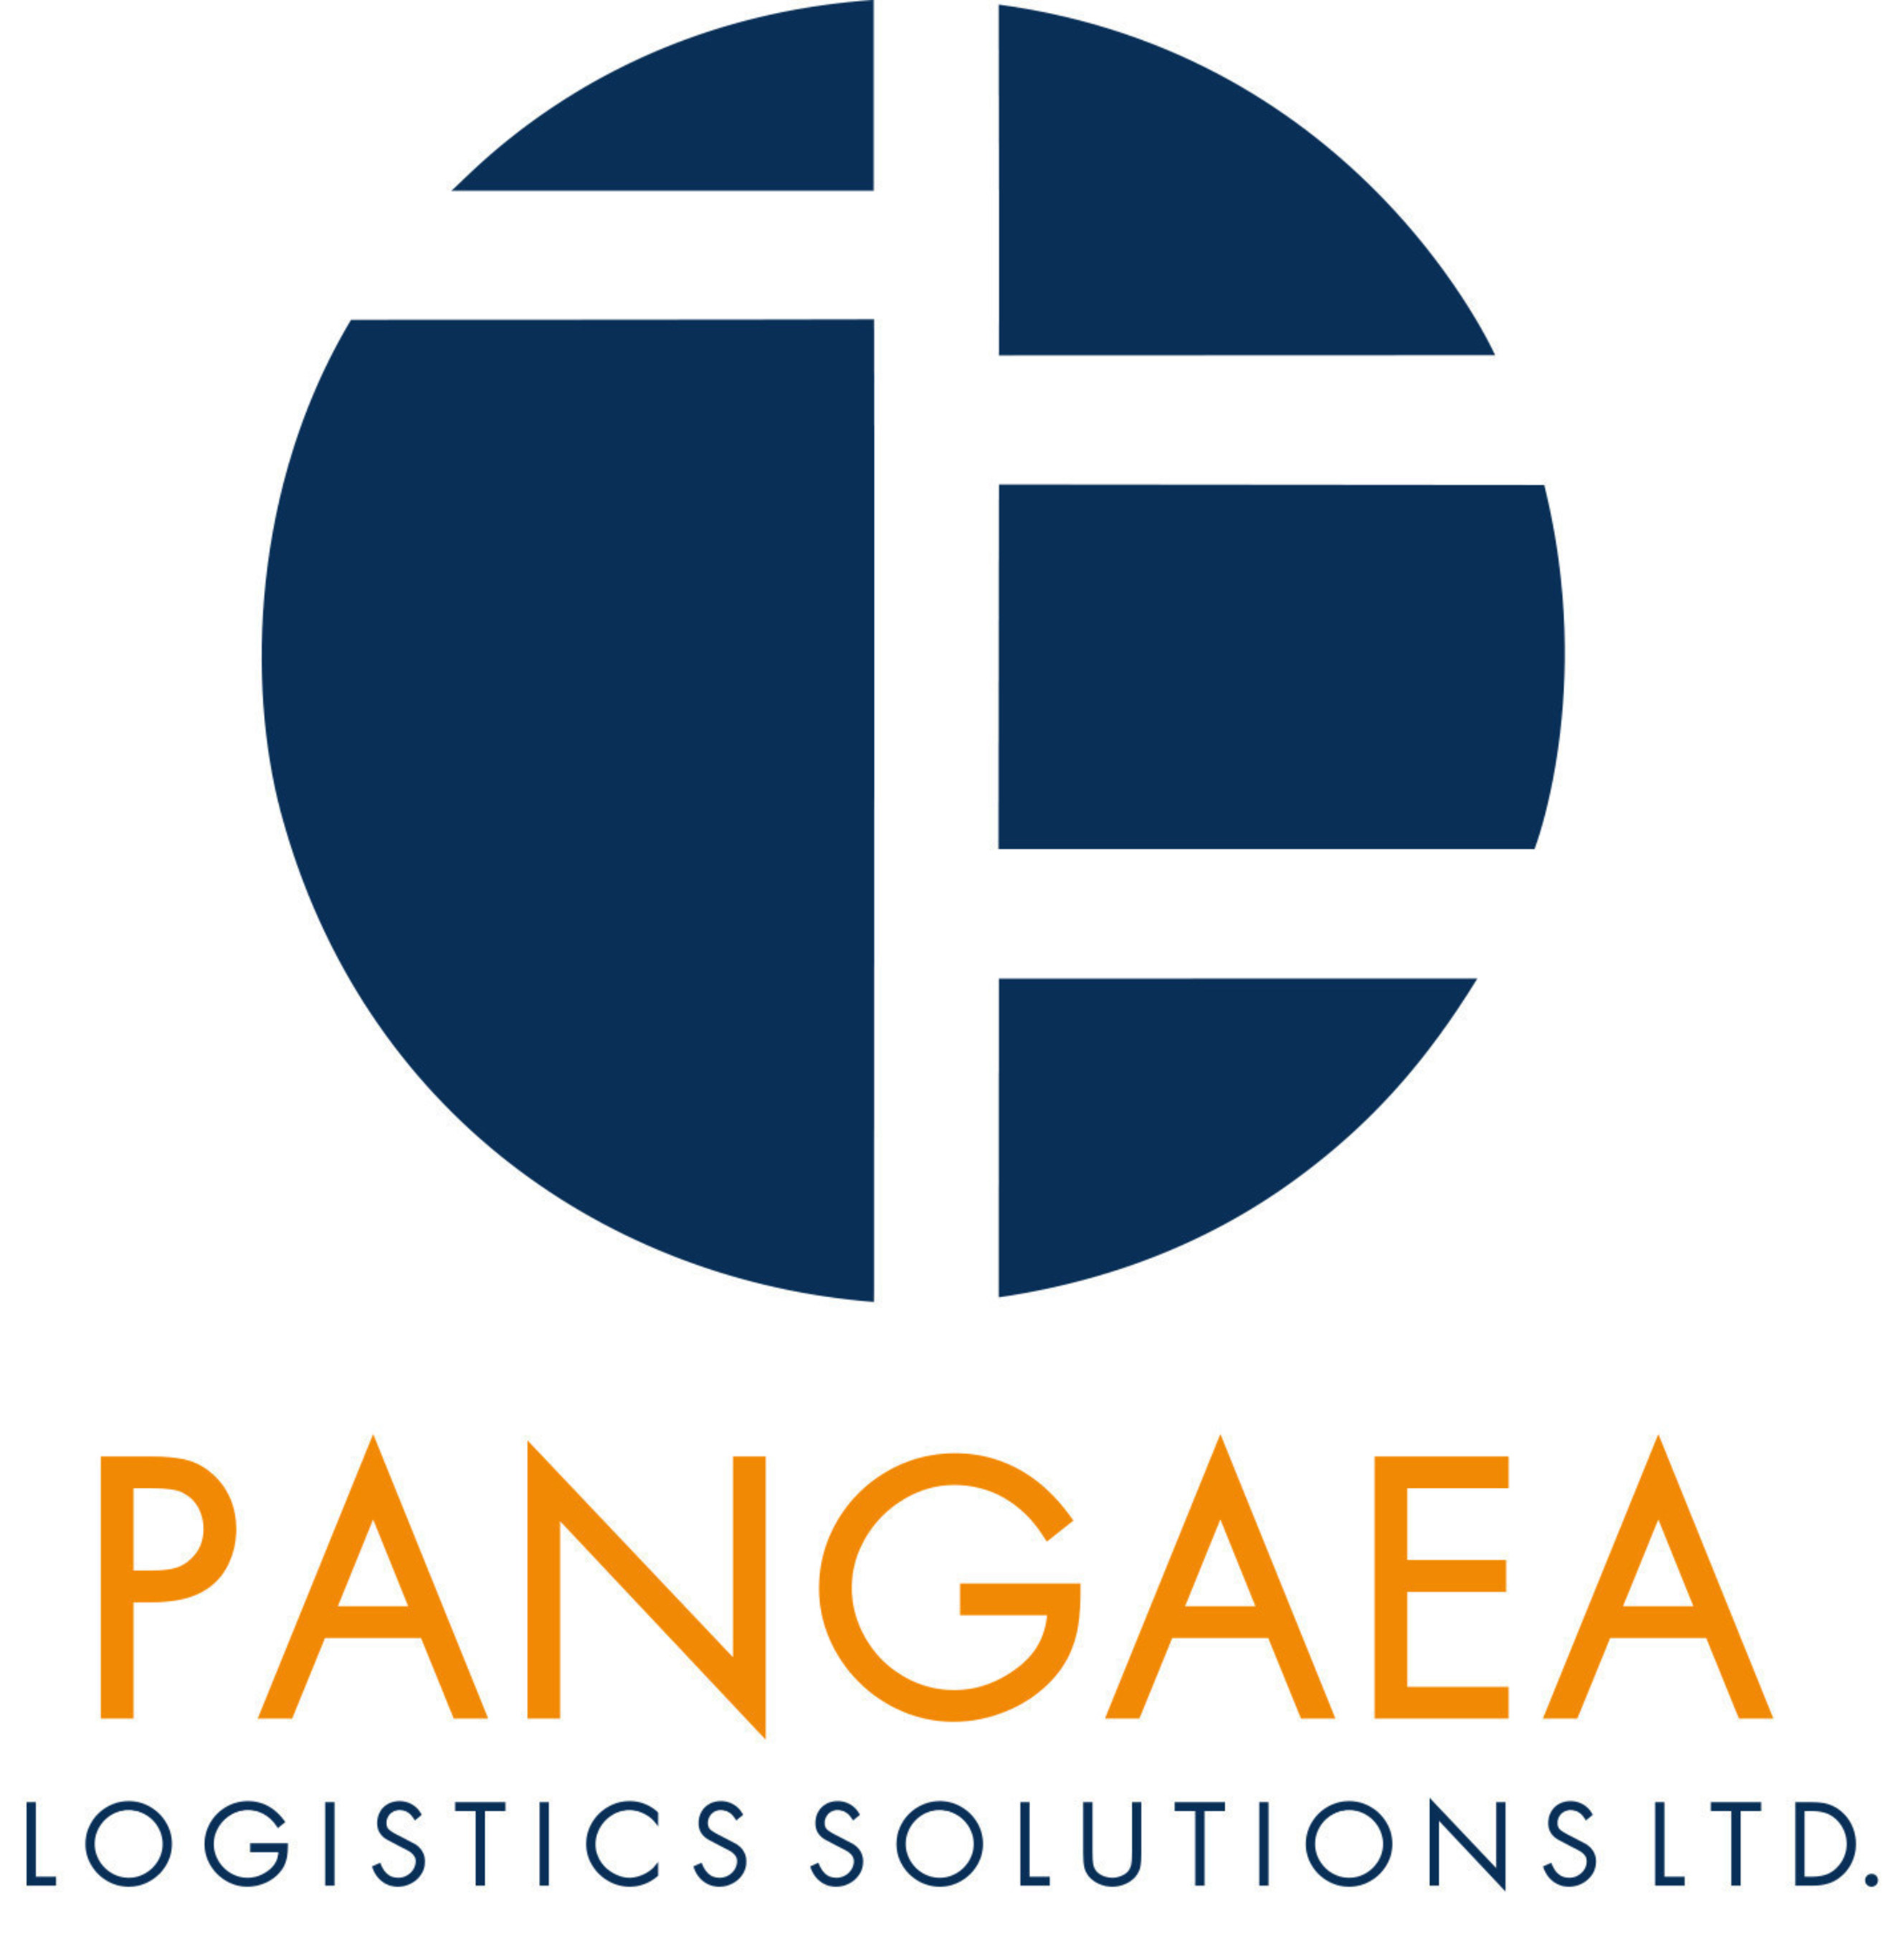 Pangaea Logistics Solutions Ltd. (PRNewsFoto/Pangaea Logistics Solutions Ltd.)